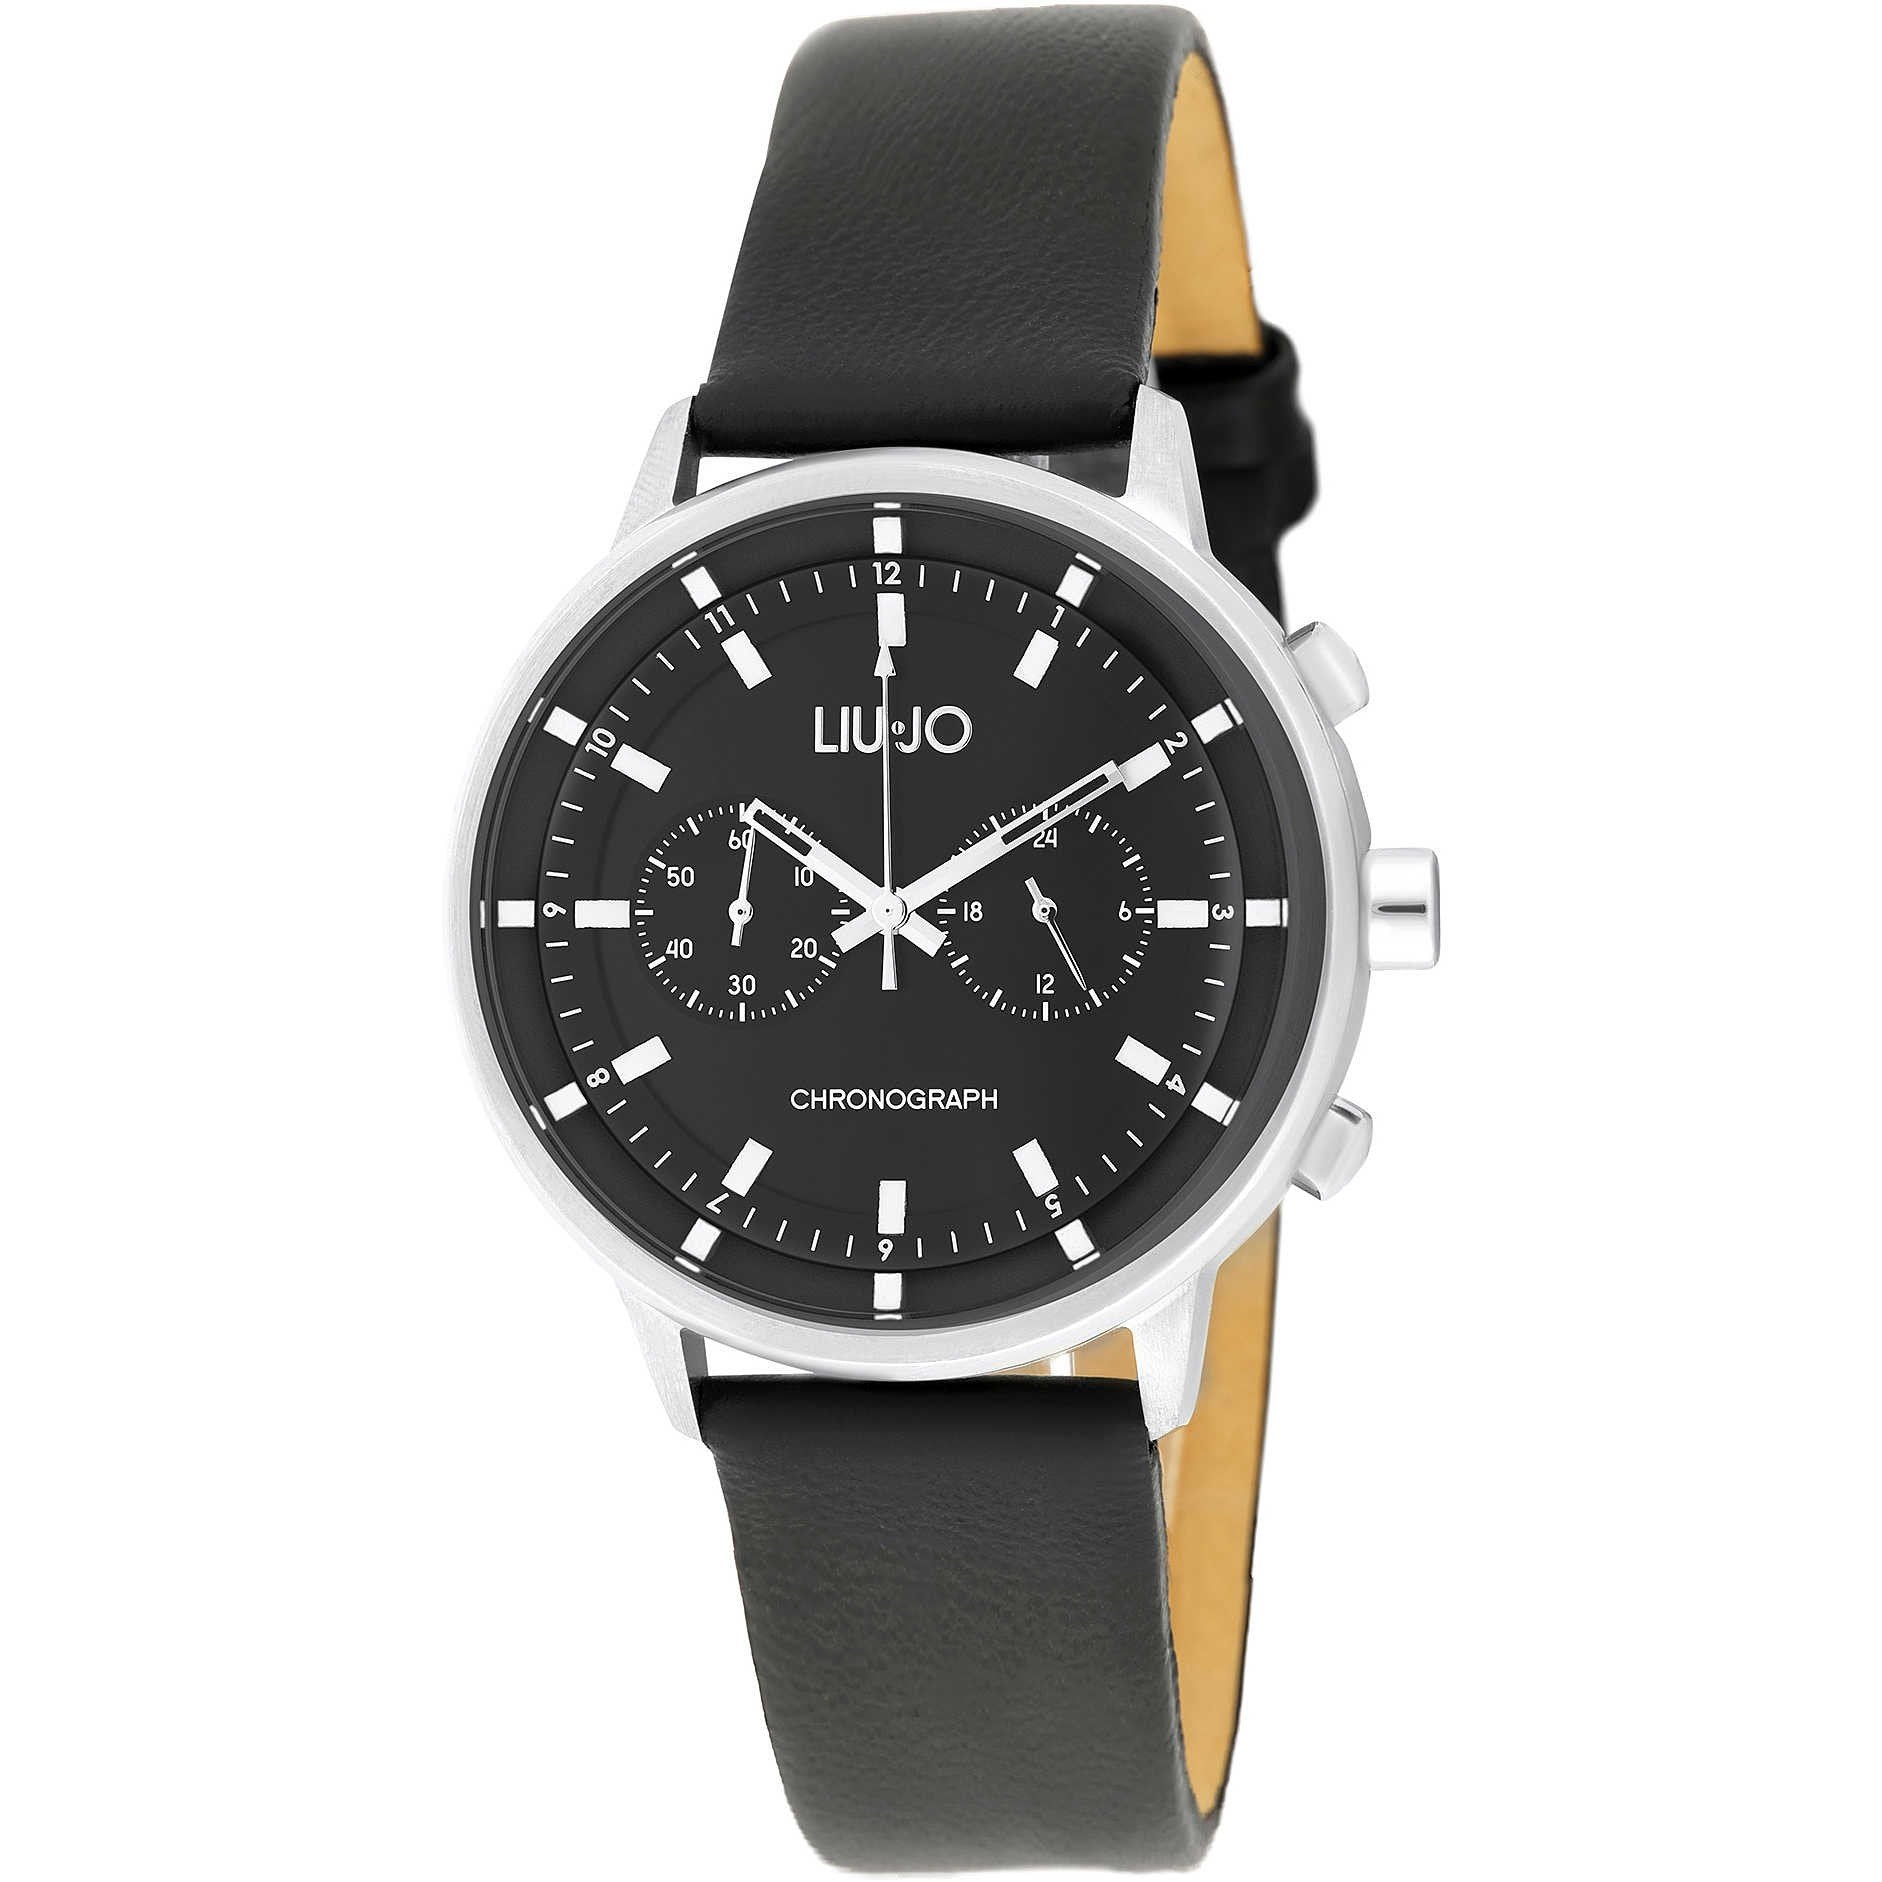 Liu Jo orologio uomo Future Stars 41mm cronografo quarzo acciaio TLJ1665 - Gioielleria Capodagli